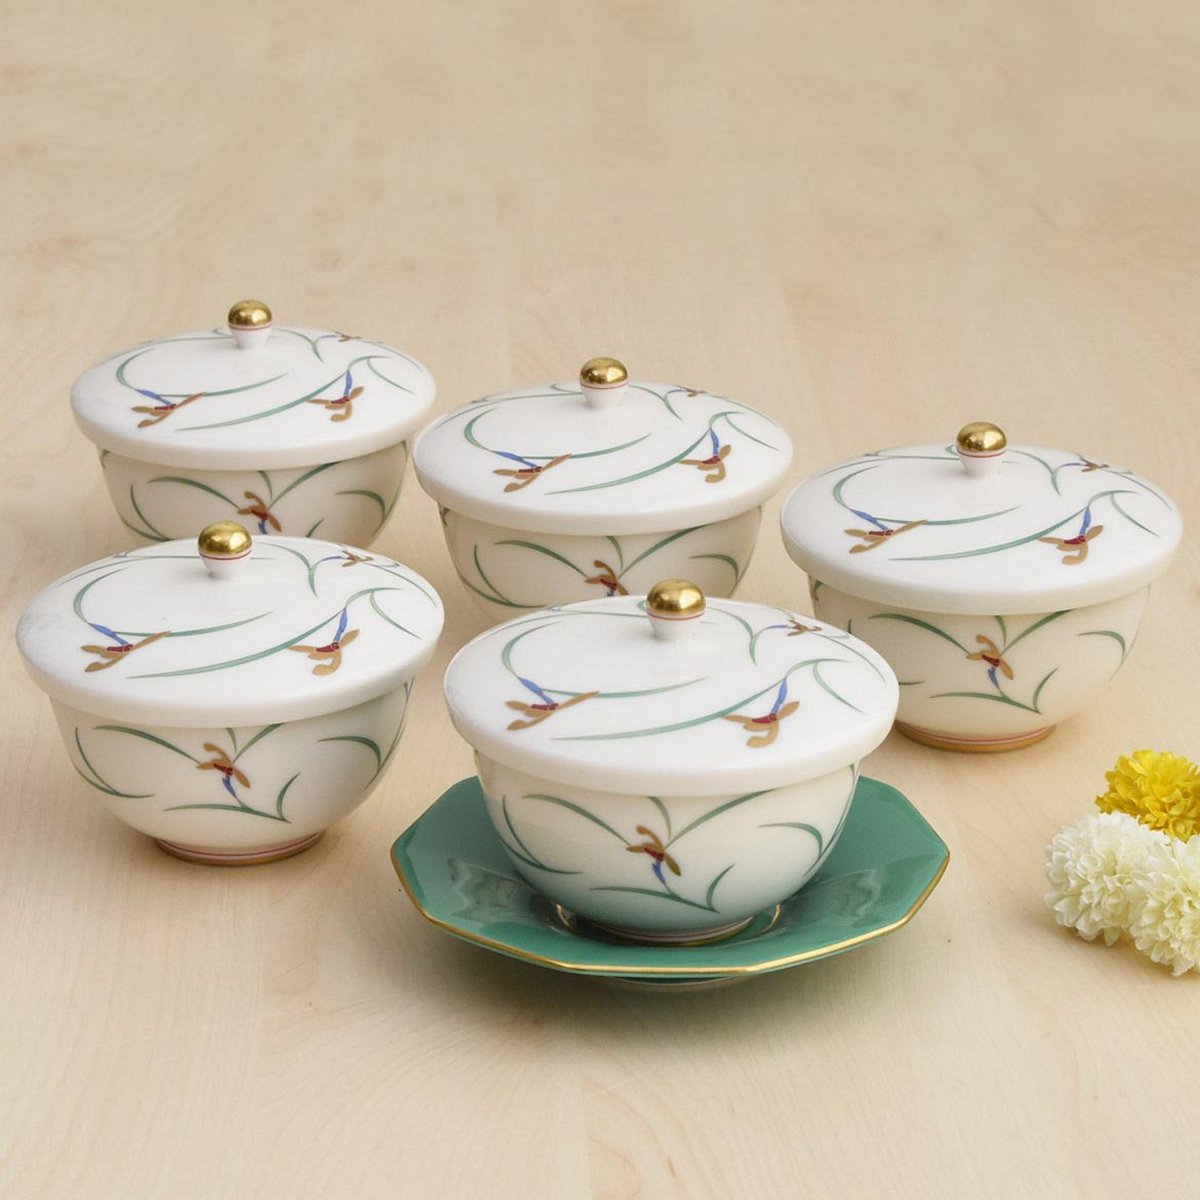 有田焼 香蘭社の茶托付きお茶碗五客セット❣️高級品です。食器 - 食器